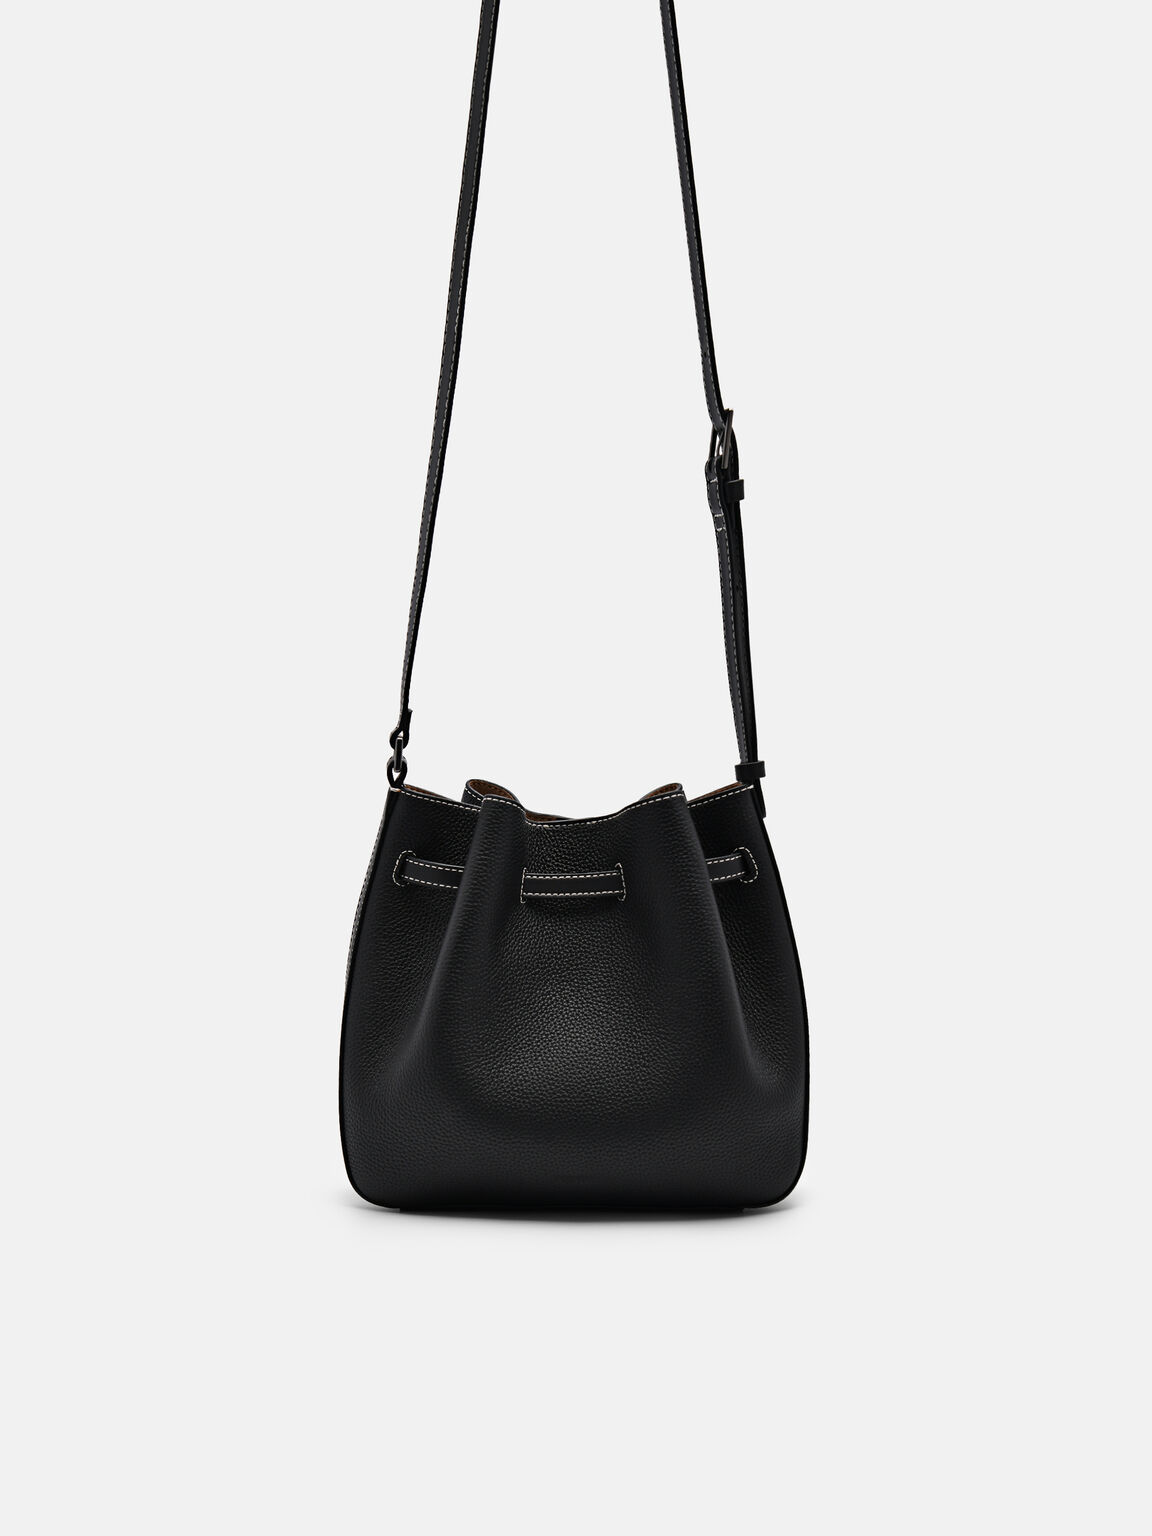 Helix Leather Bucket Bag, Black